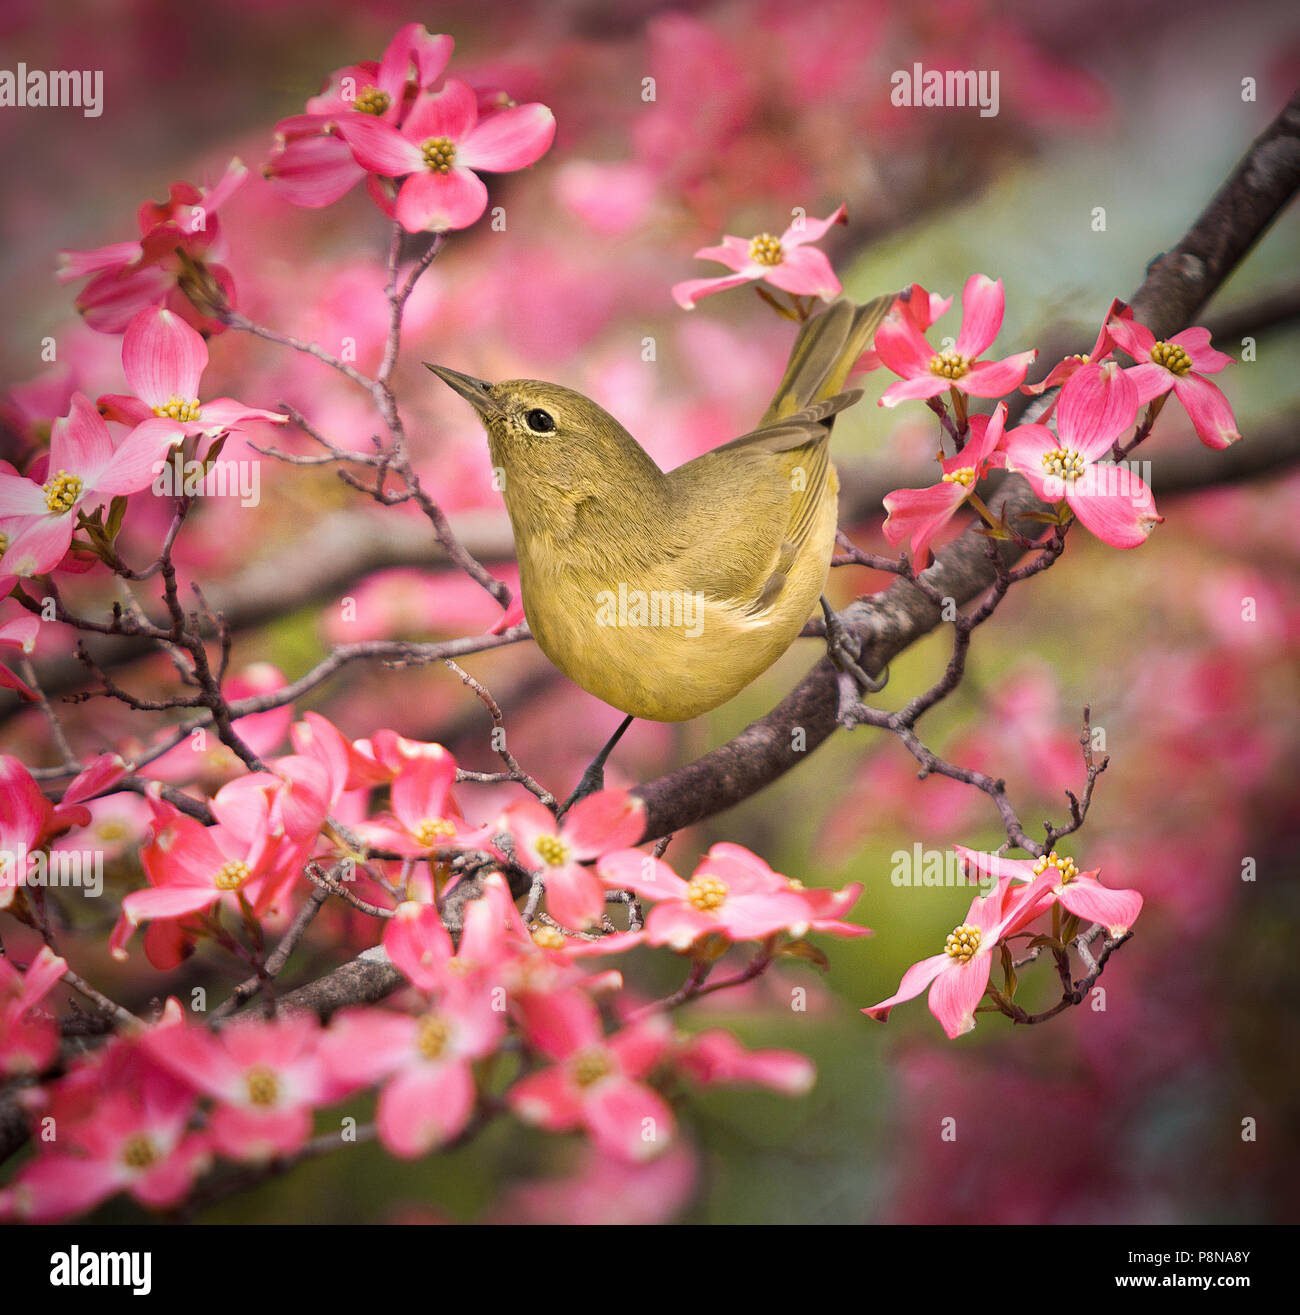 Une Paruline verdâtre. Un petit oiseau chanteur a fait sensiblement avec le projet de loi, et une envergure courte queue carrée perchée dans un arbre rose de cornouiller à fleurs. Banque D'Images